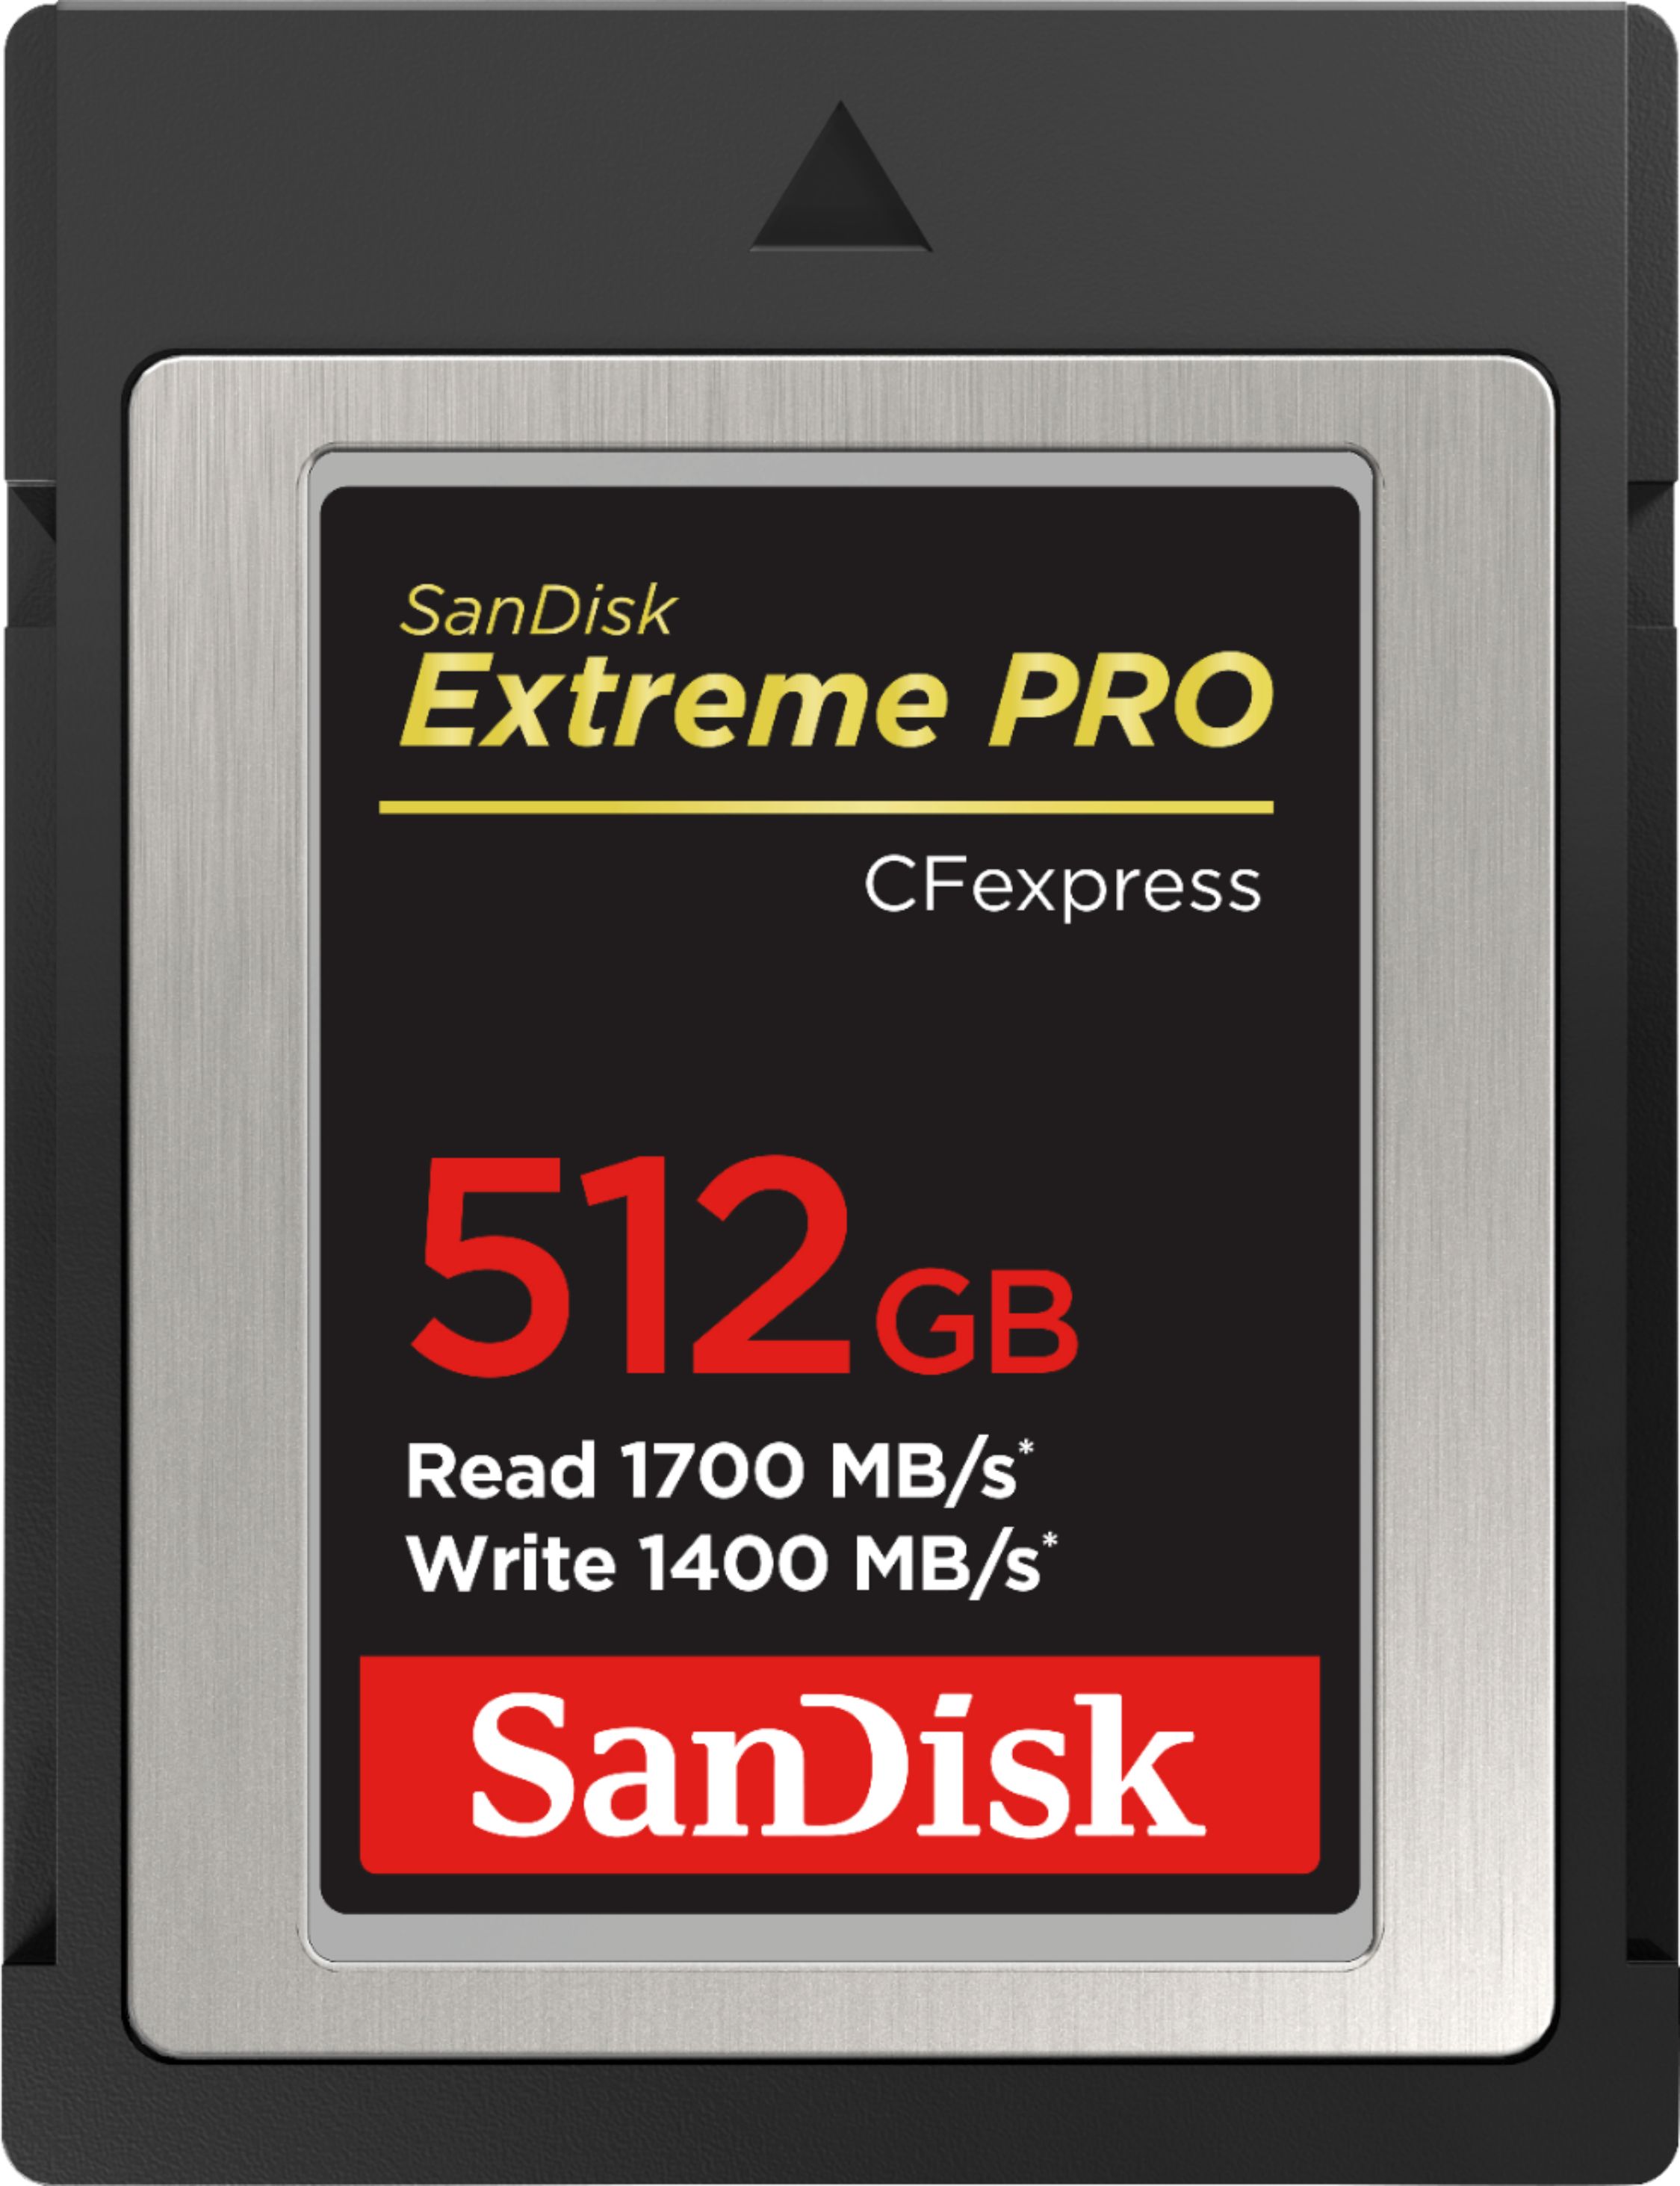 512 gigabytes Memory Cards - Best Buy